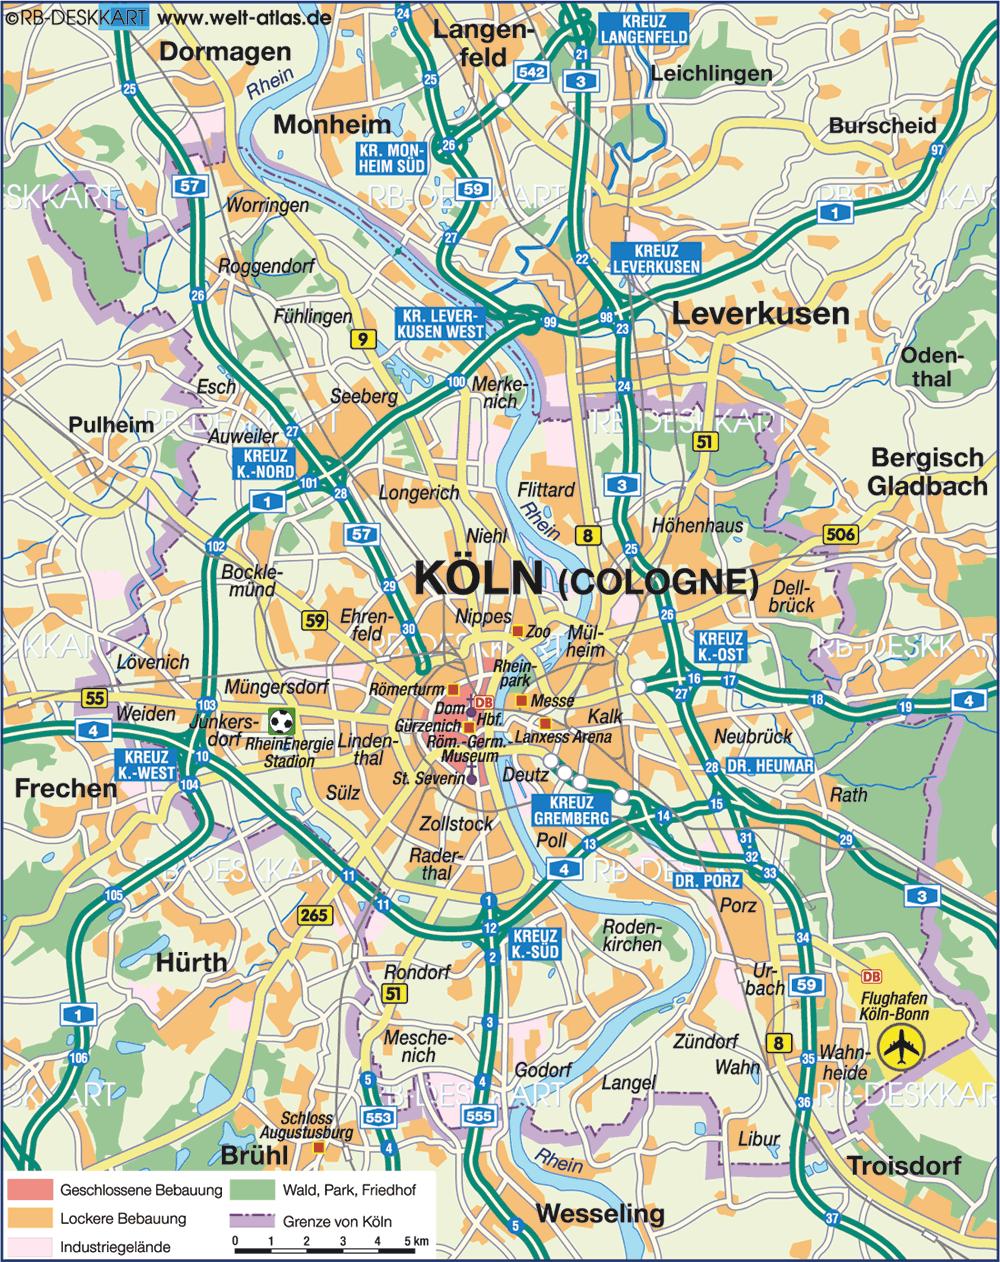 2. Das Grundstück Linksrheinisch im Süden der Stadt Köln Urbane Lage mit guter Verkehrsanbindung und Infrastruktur, zahlreiche Freizeit- und kulturelle Einrichtungen